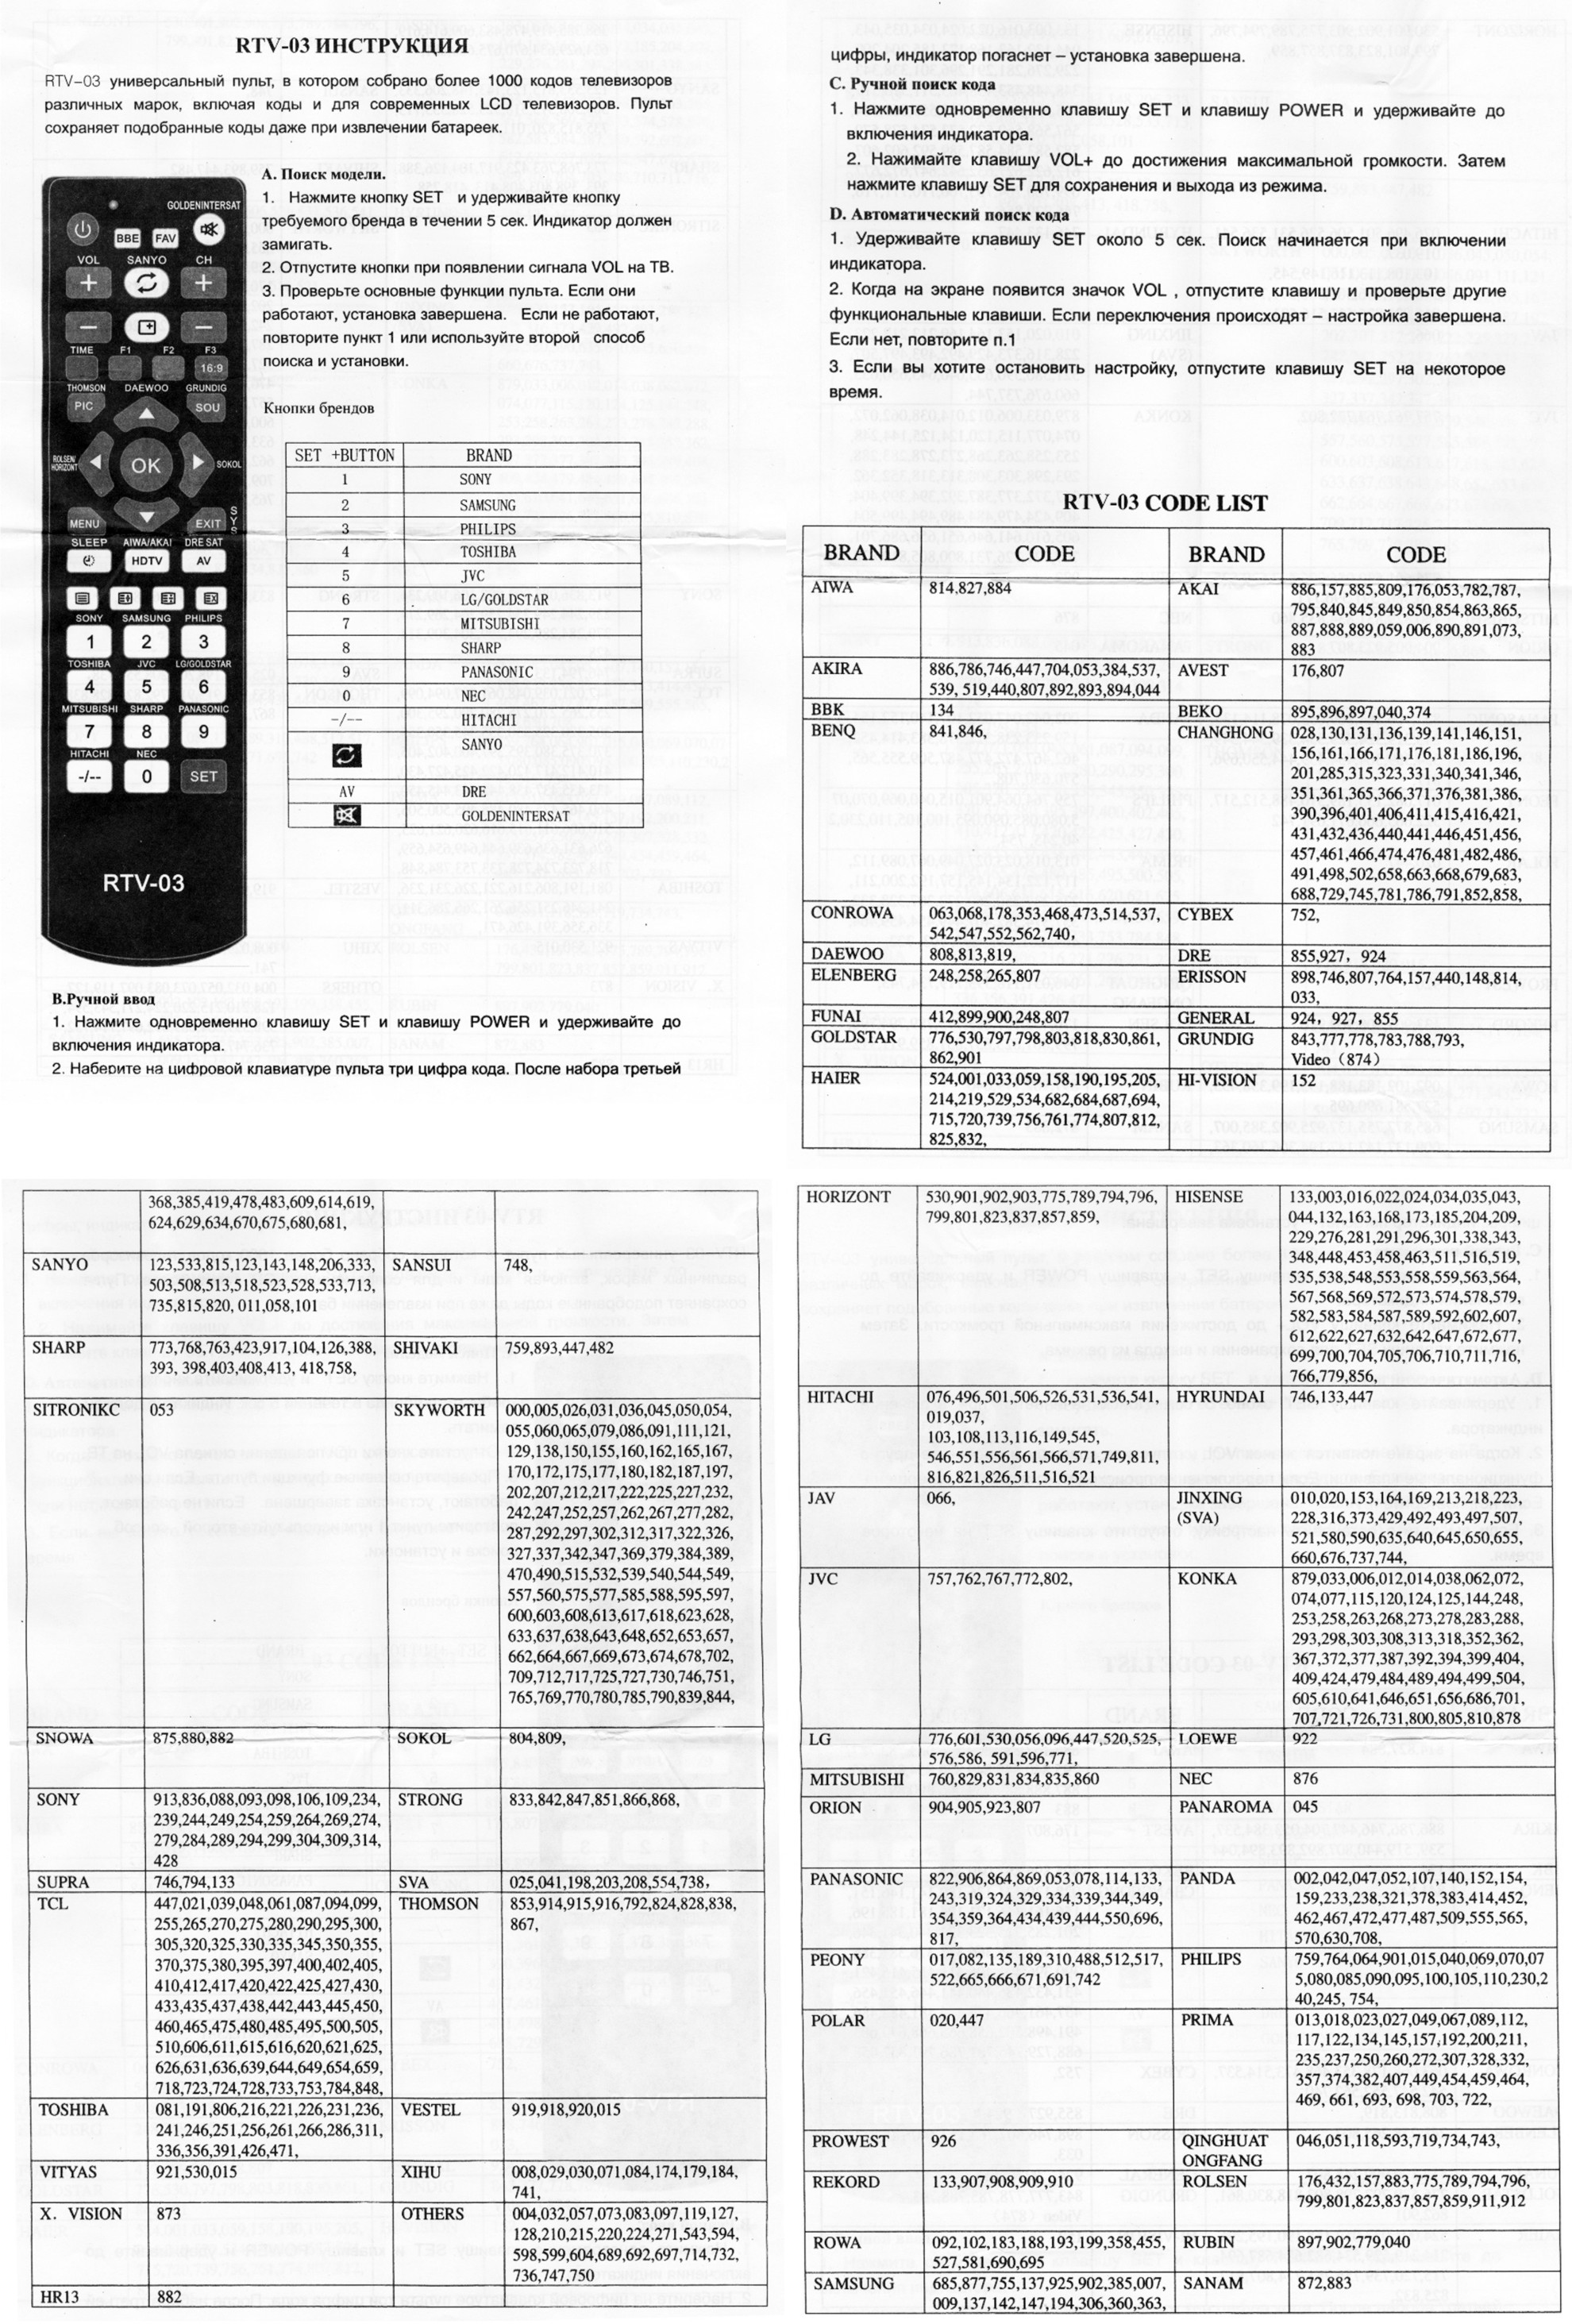 Коды пульта samsung. Коды для универсального пульта для телевизора Sanyo. Коды для универсального пульта для телевизора Daewoo. Универсальный пульт для телевизора DZ-498 коды. Универсальный пульт RTV-03 для телевизора коды для Sharp.